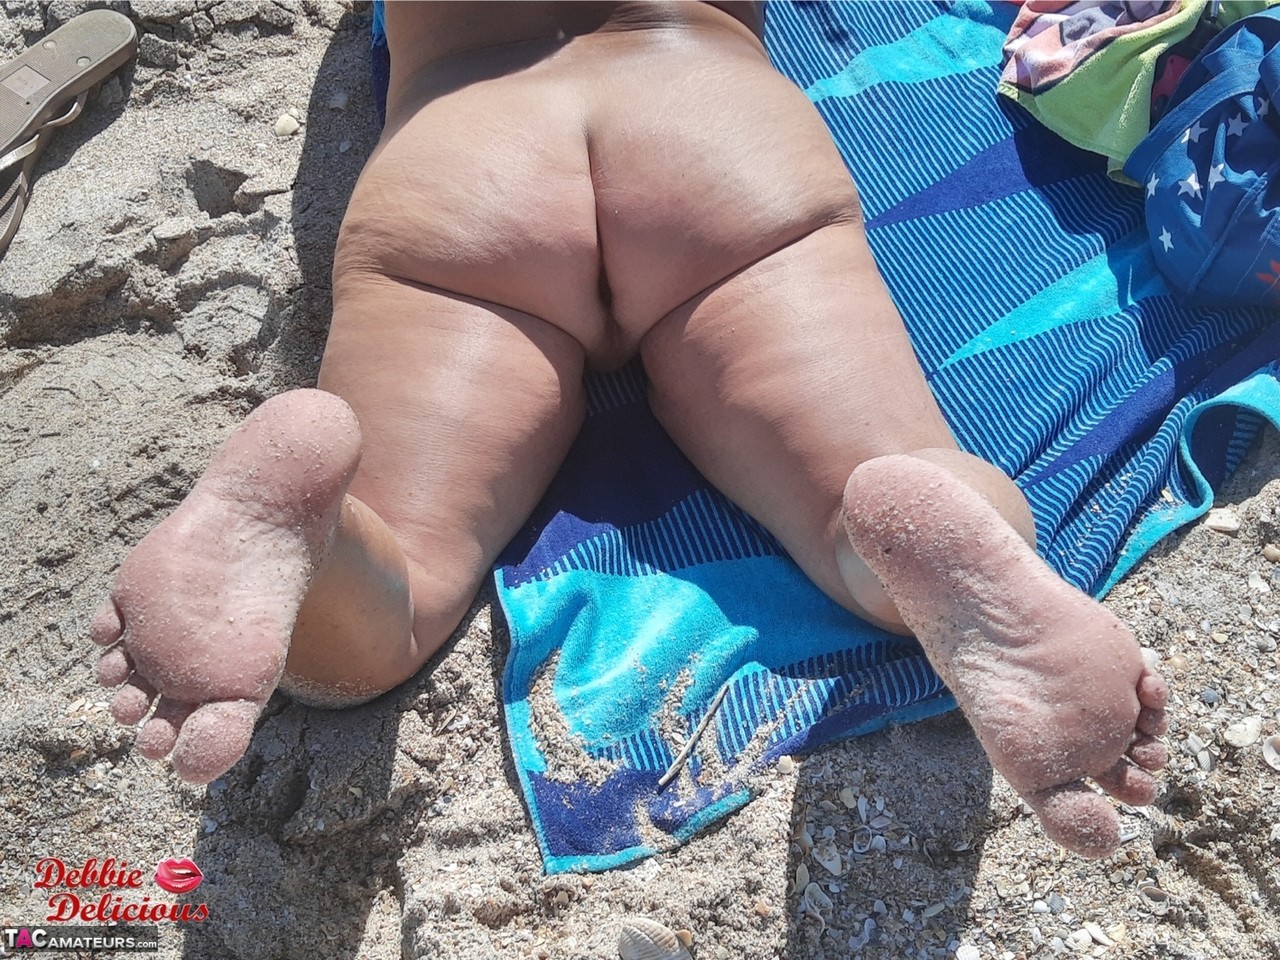 Older amateur Debbie Delicious sunbathes in shades on a nude beach foto porno #426813788 | TAC Amateurs Pics, Debbie Delicious, Smoking, porno móvil